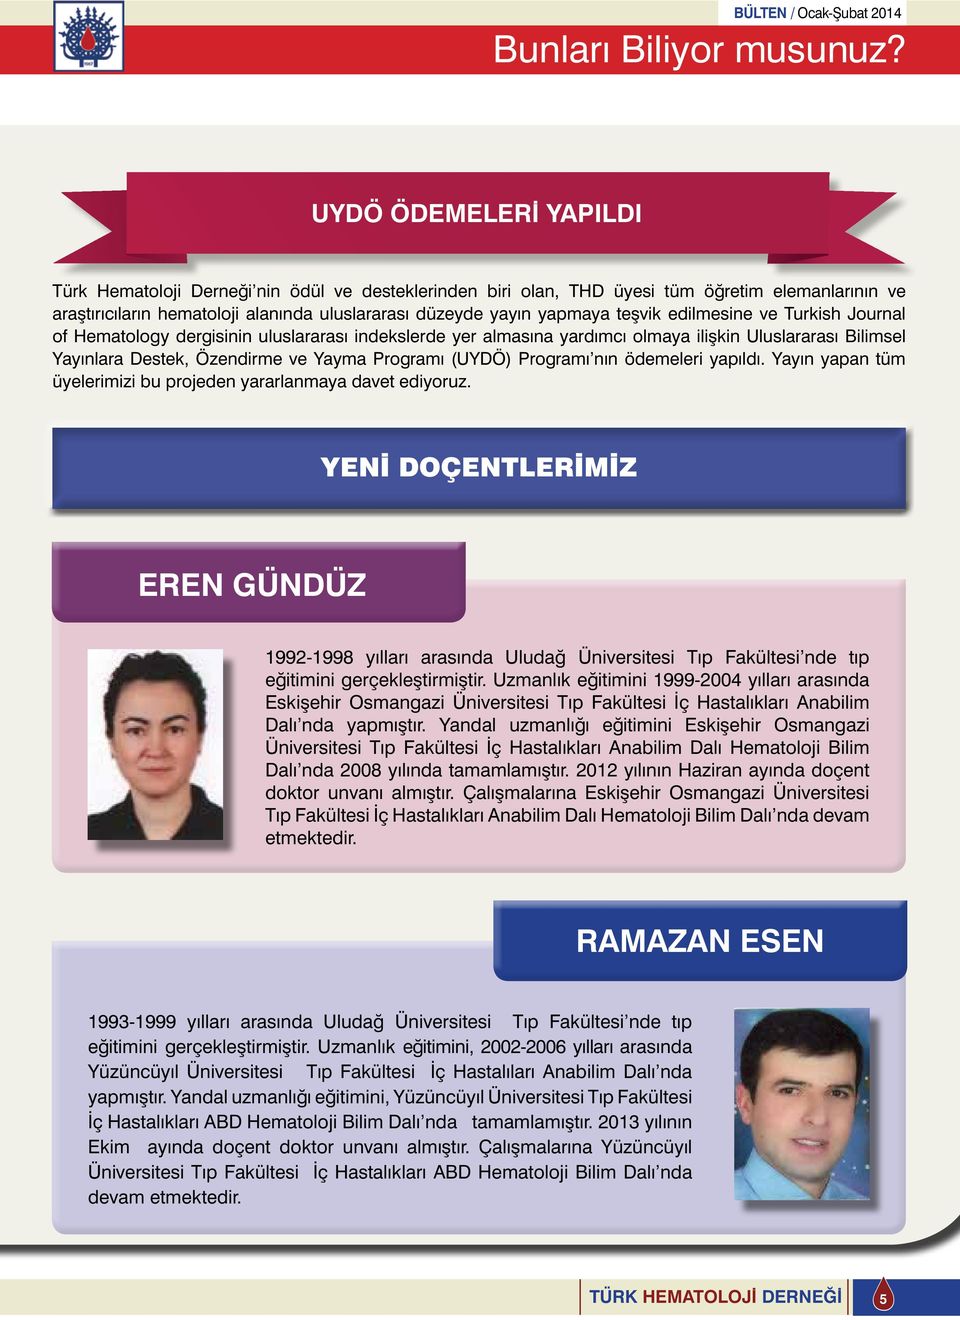 teşvik edilmesine ve Turkish Journal of Hematology dergisinin uluslararası indekslerde yer almasına yardımcı olmaya ilişkin Uluslararası Bilimsel Yayınlara Destek, Özendirme ve Yayma Programı (UYDÖ)